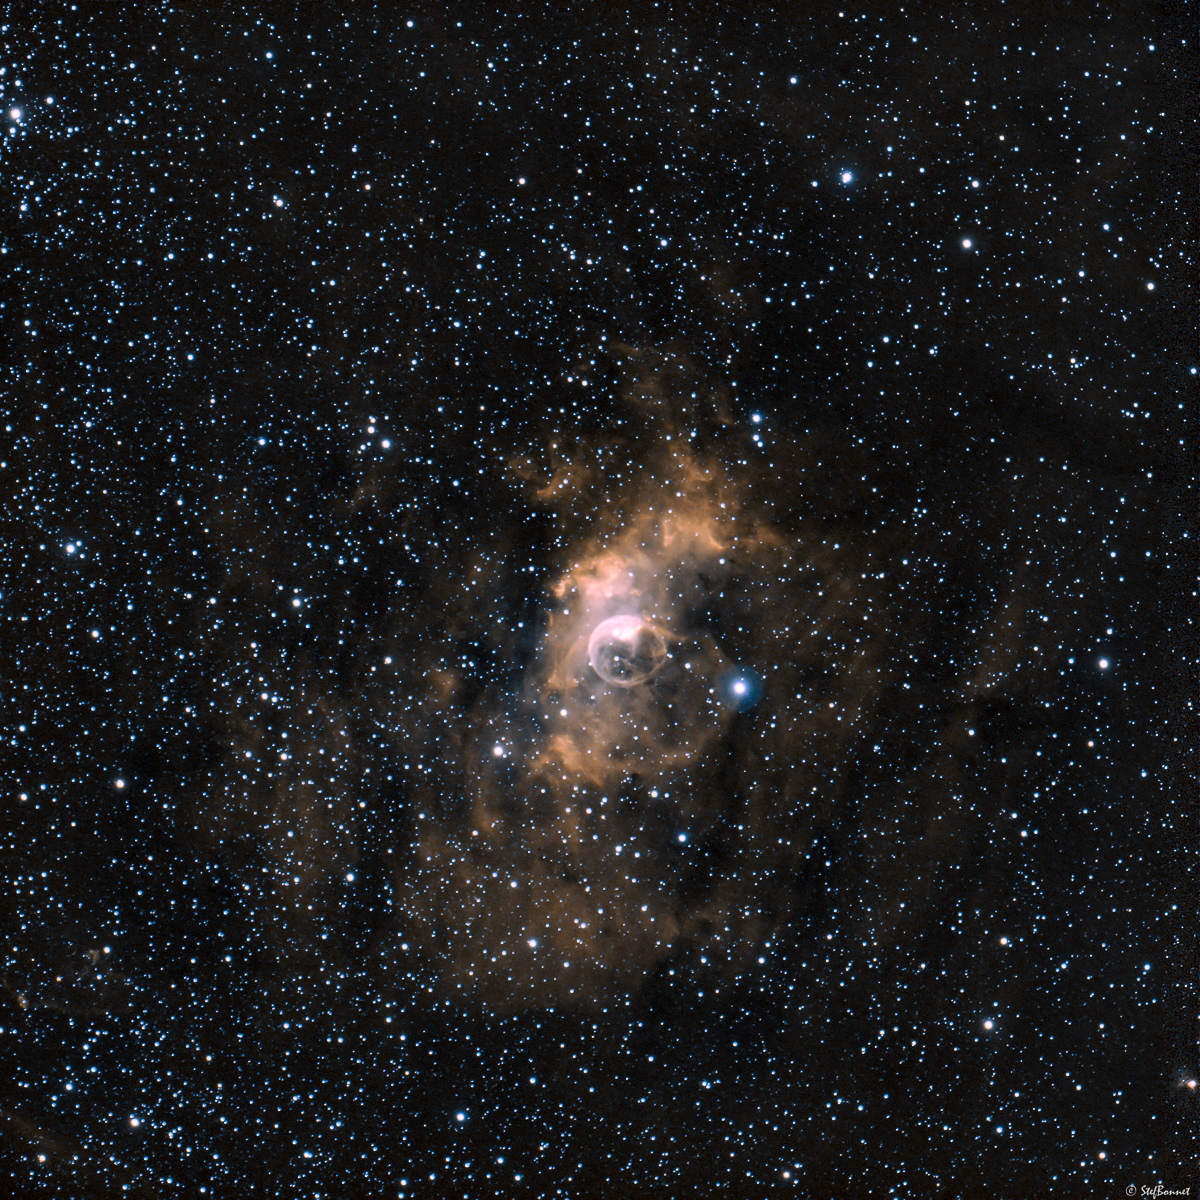 62f8ec814be62_NGC7635Bulle-Web-2.jpg.227460e3167a27c4a3f9fd9e5c4d8725.jpg